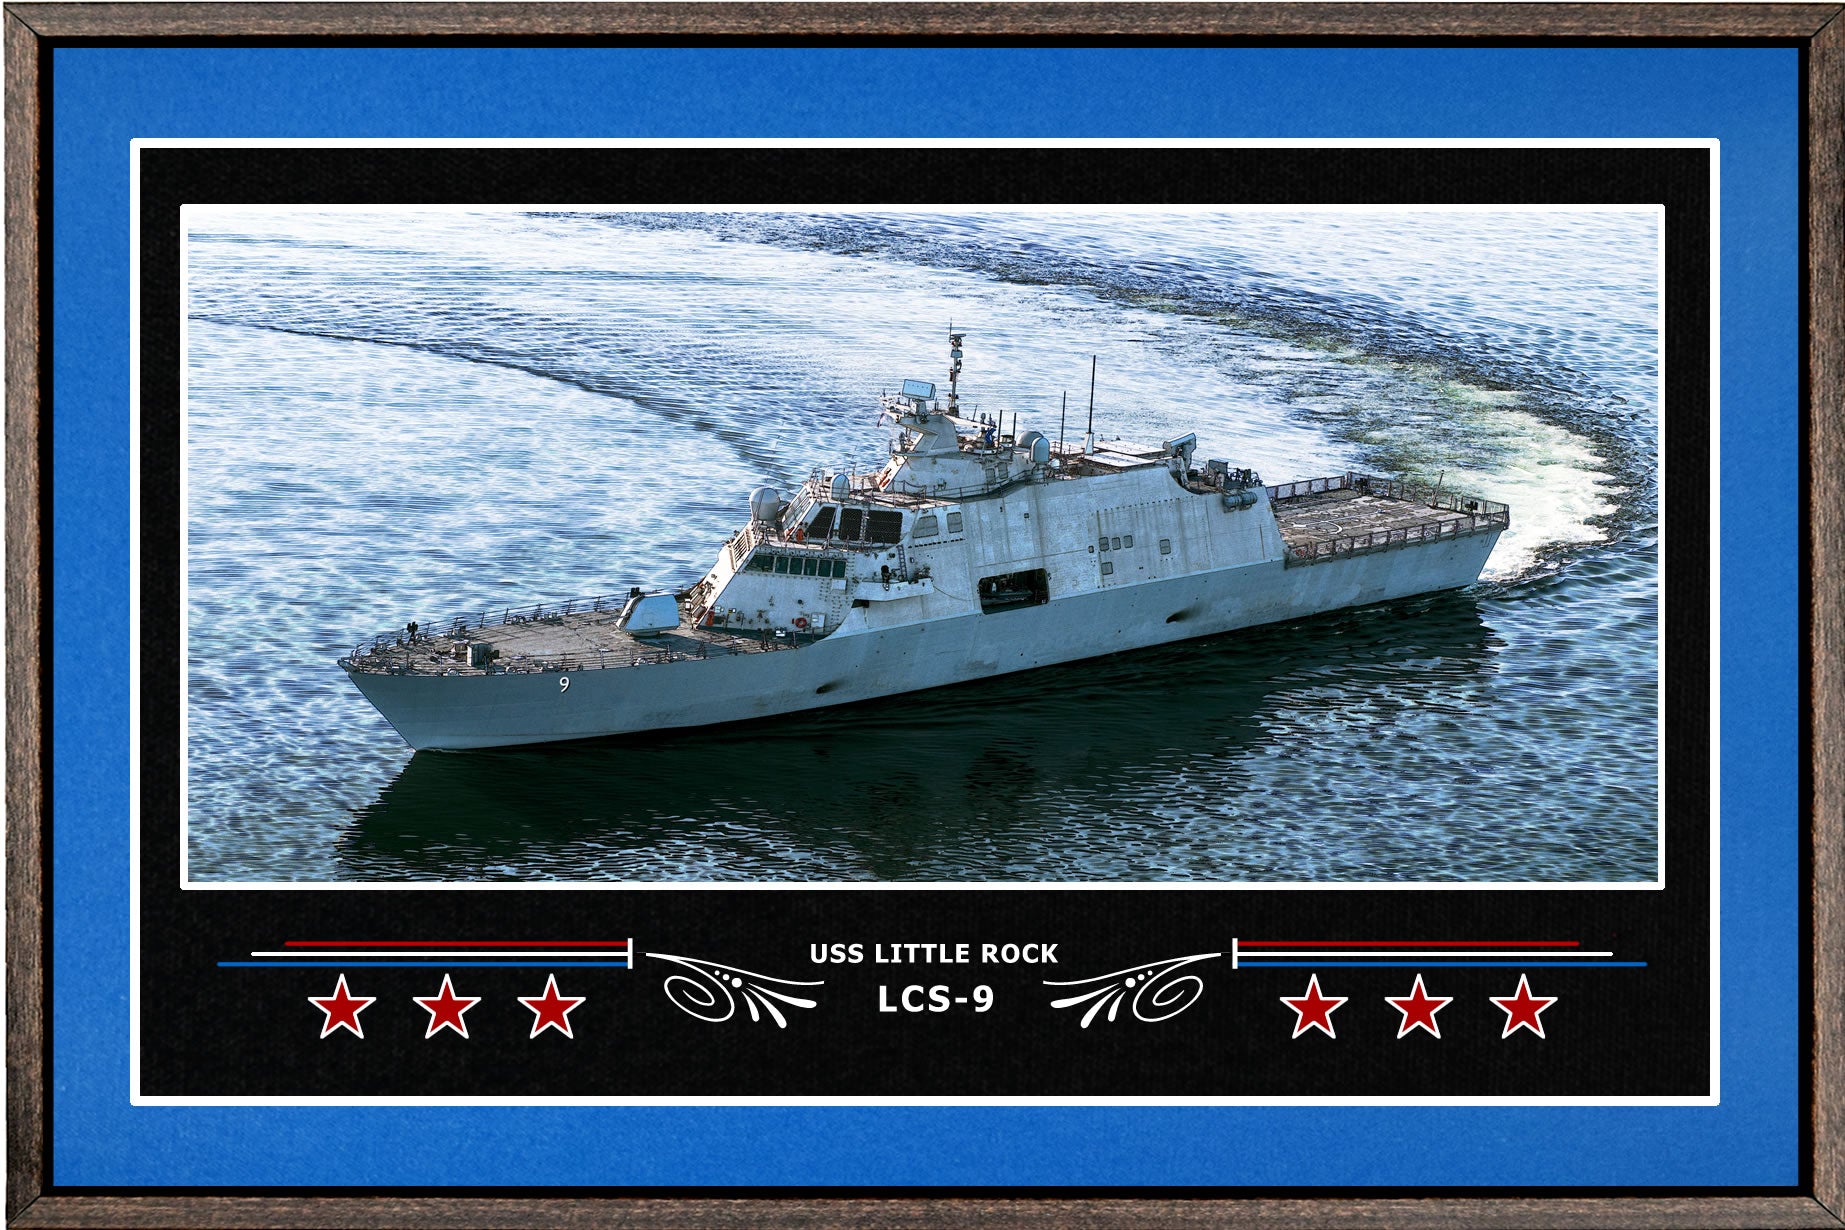 USS LITTLE ROCK LCS 9 BOX FRAMED CANVAS ART BLUE